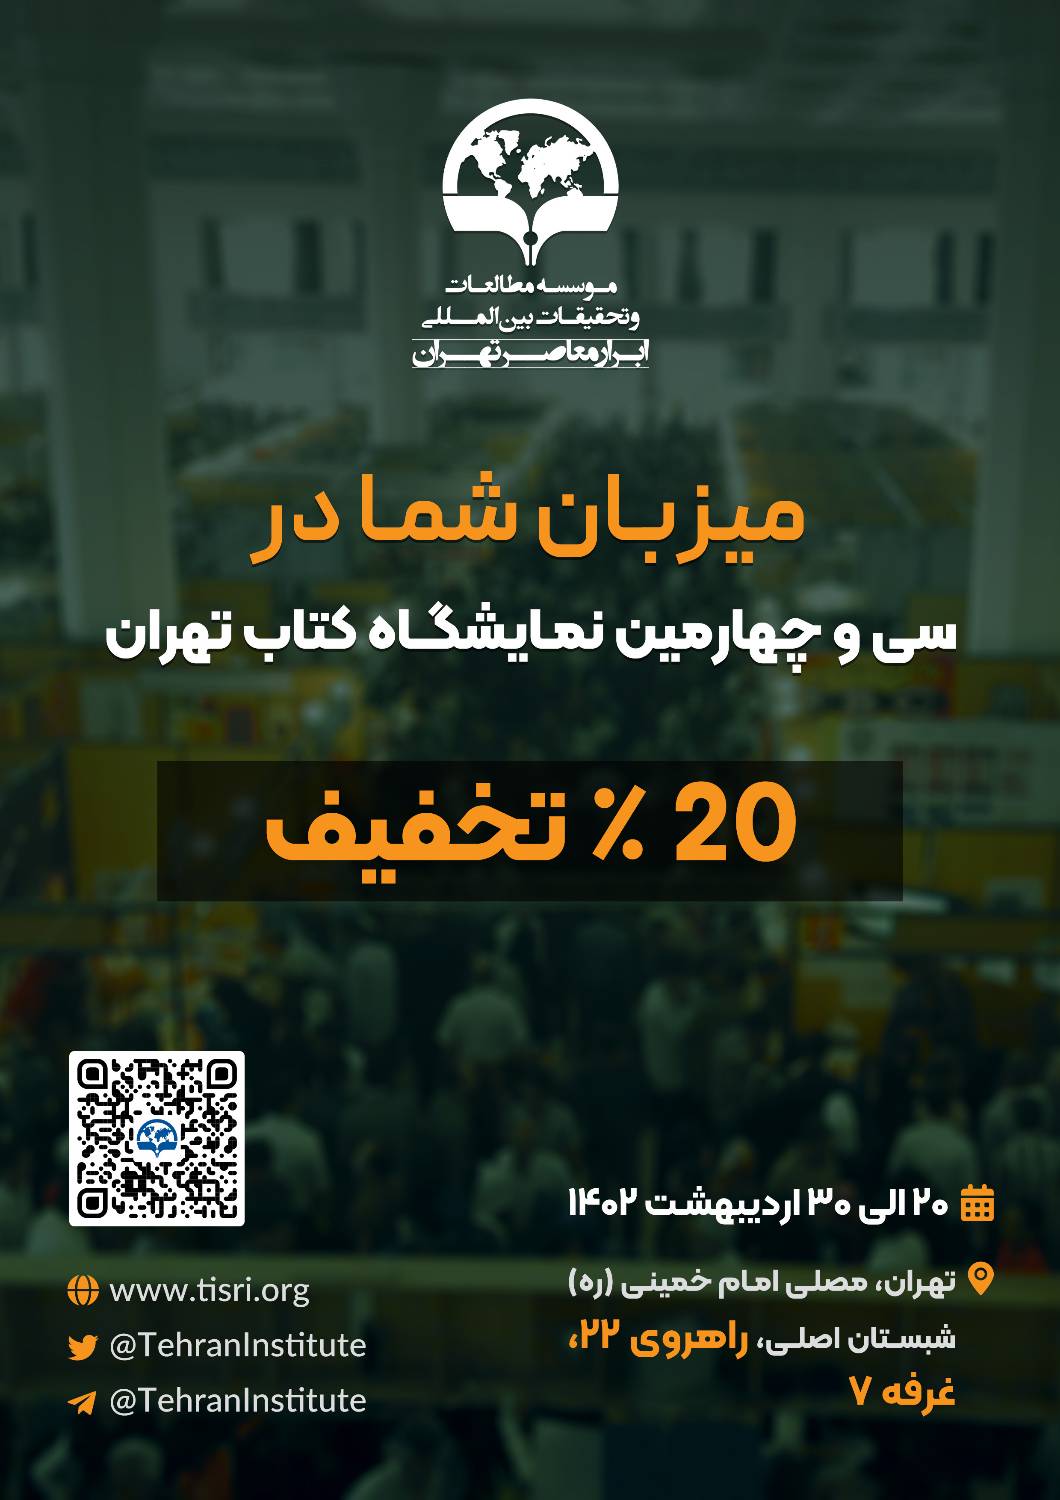 میزبان شما را در سی و چهارمین نمایشگاه بین المللی کتاب تهران هستیم.